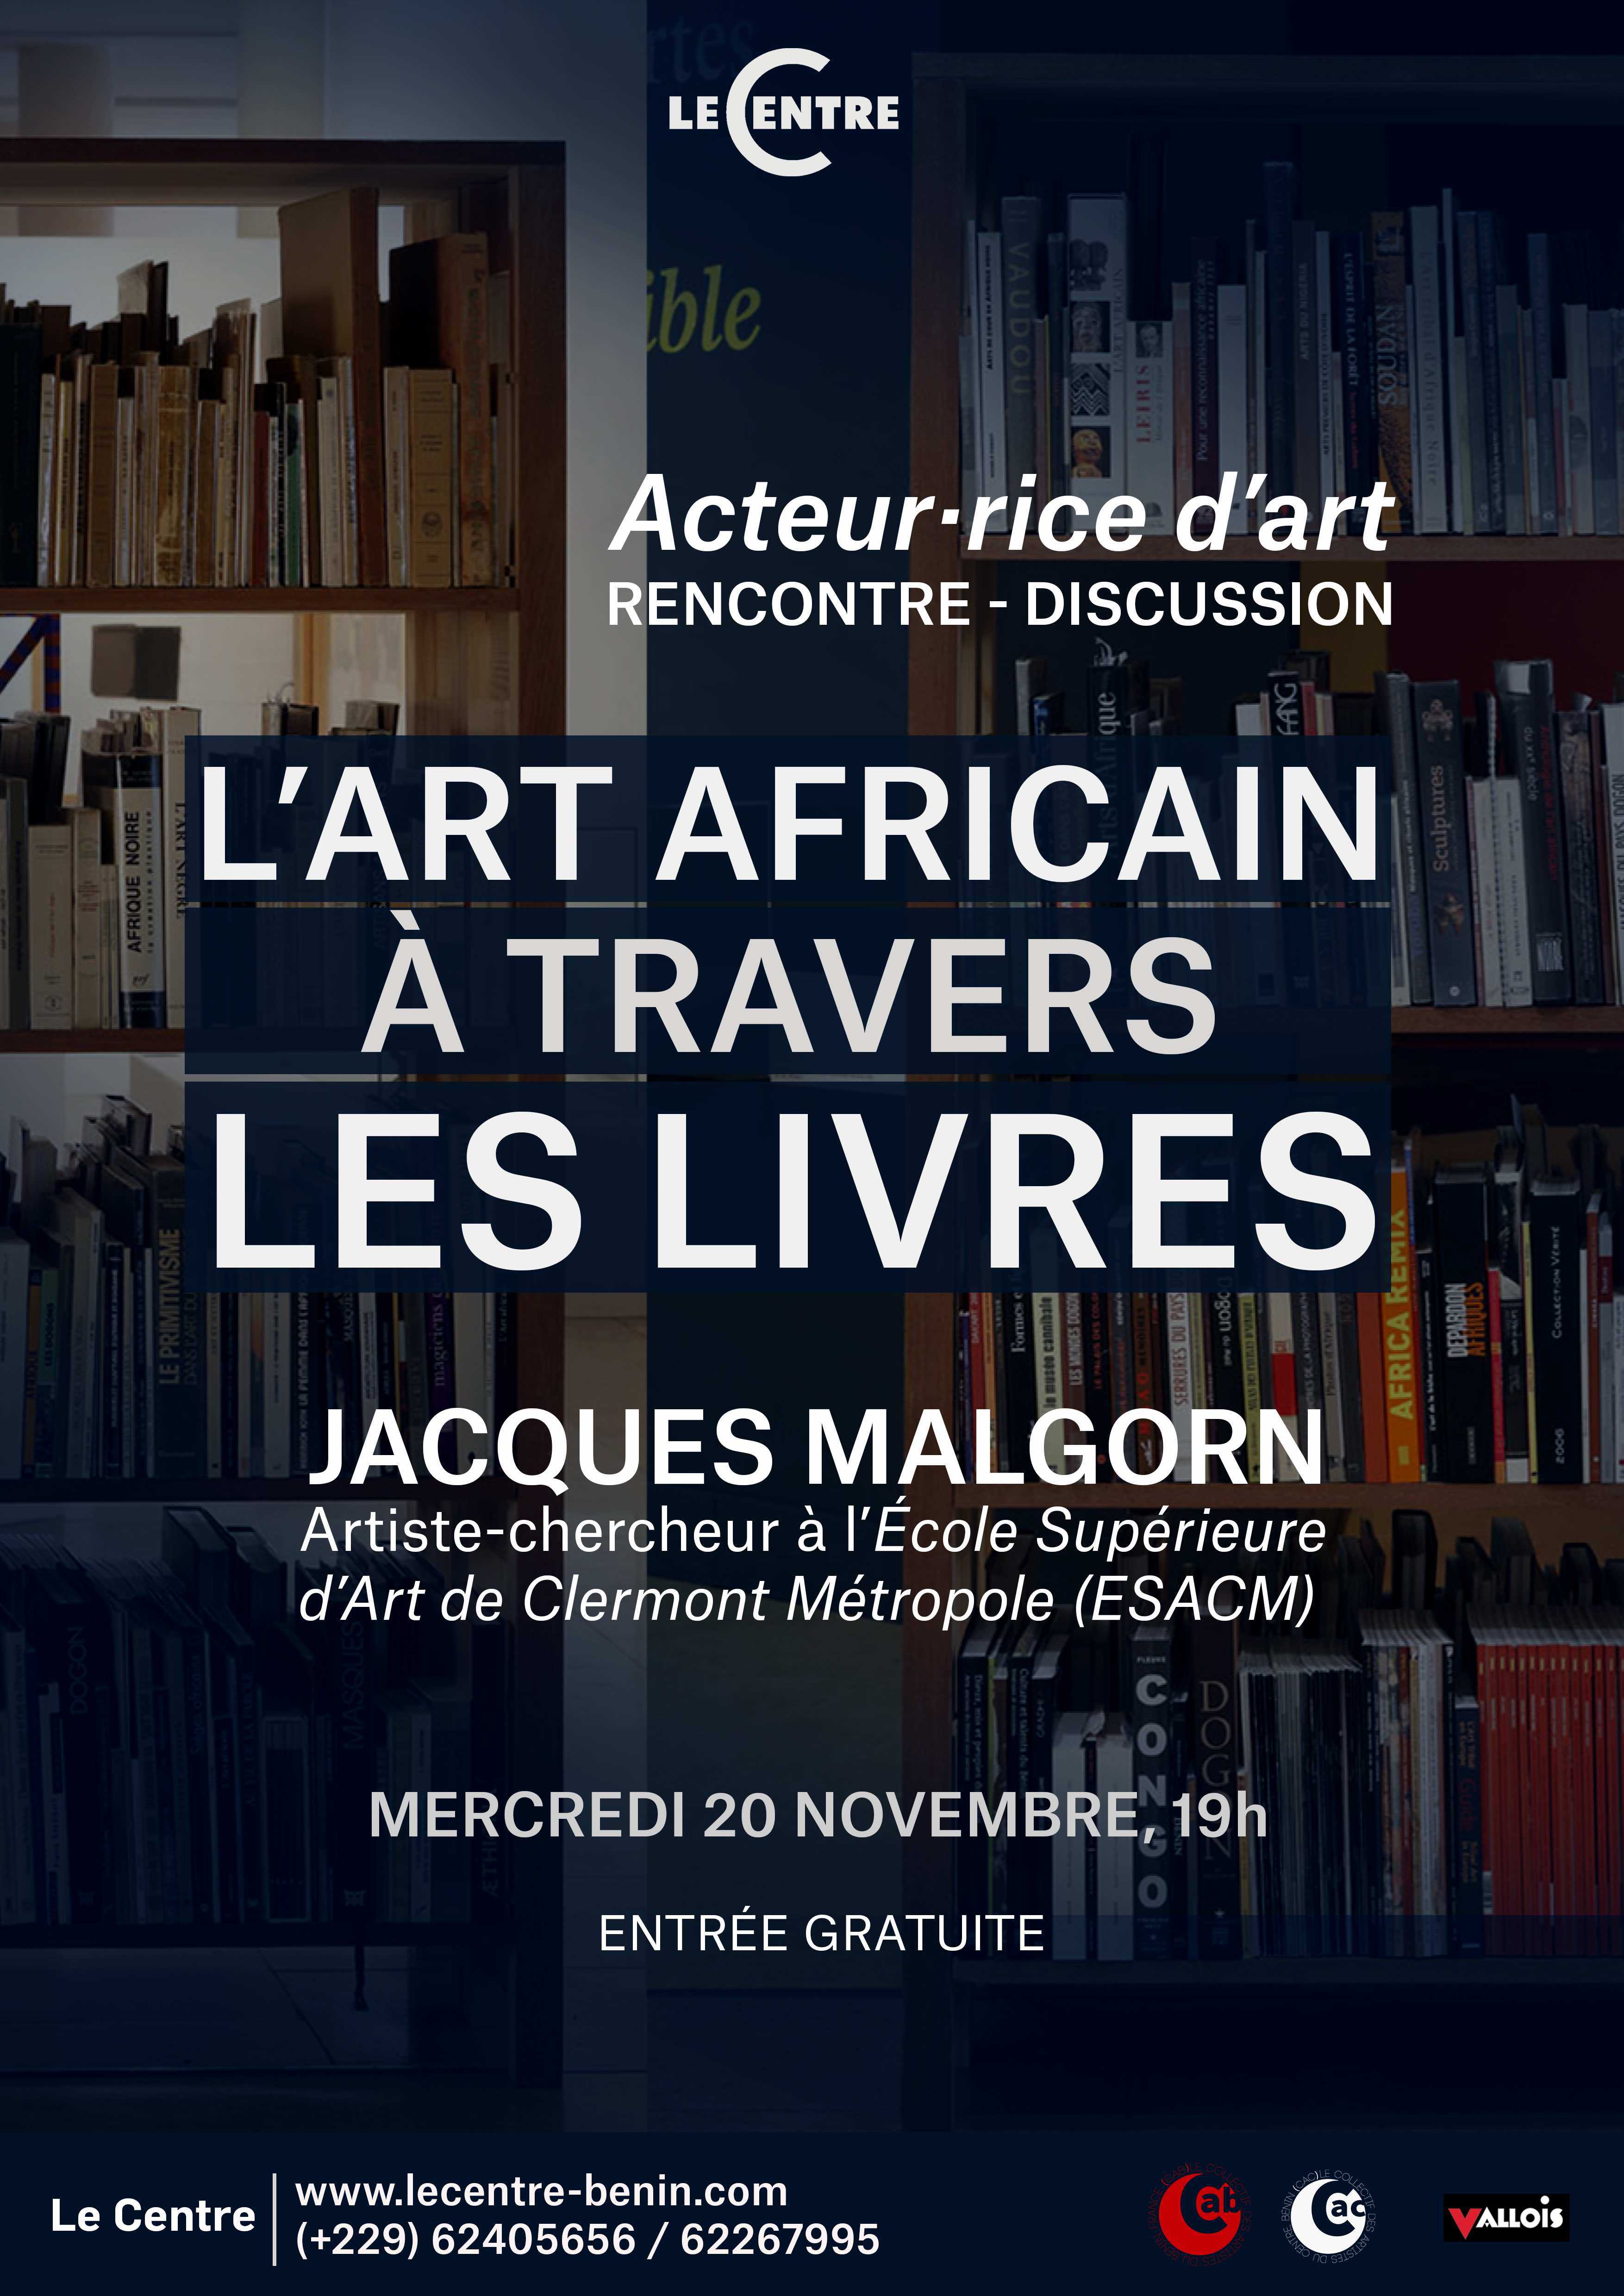 Acteur·rice·s d'art, Jacques Malgorn